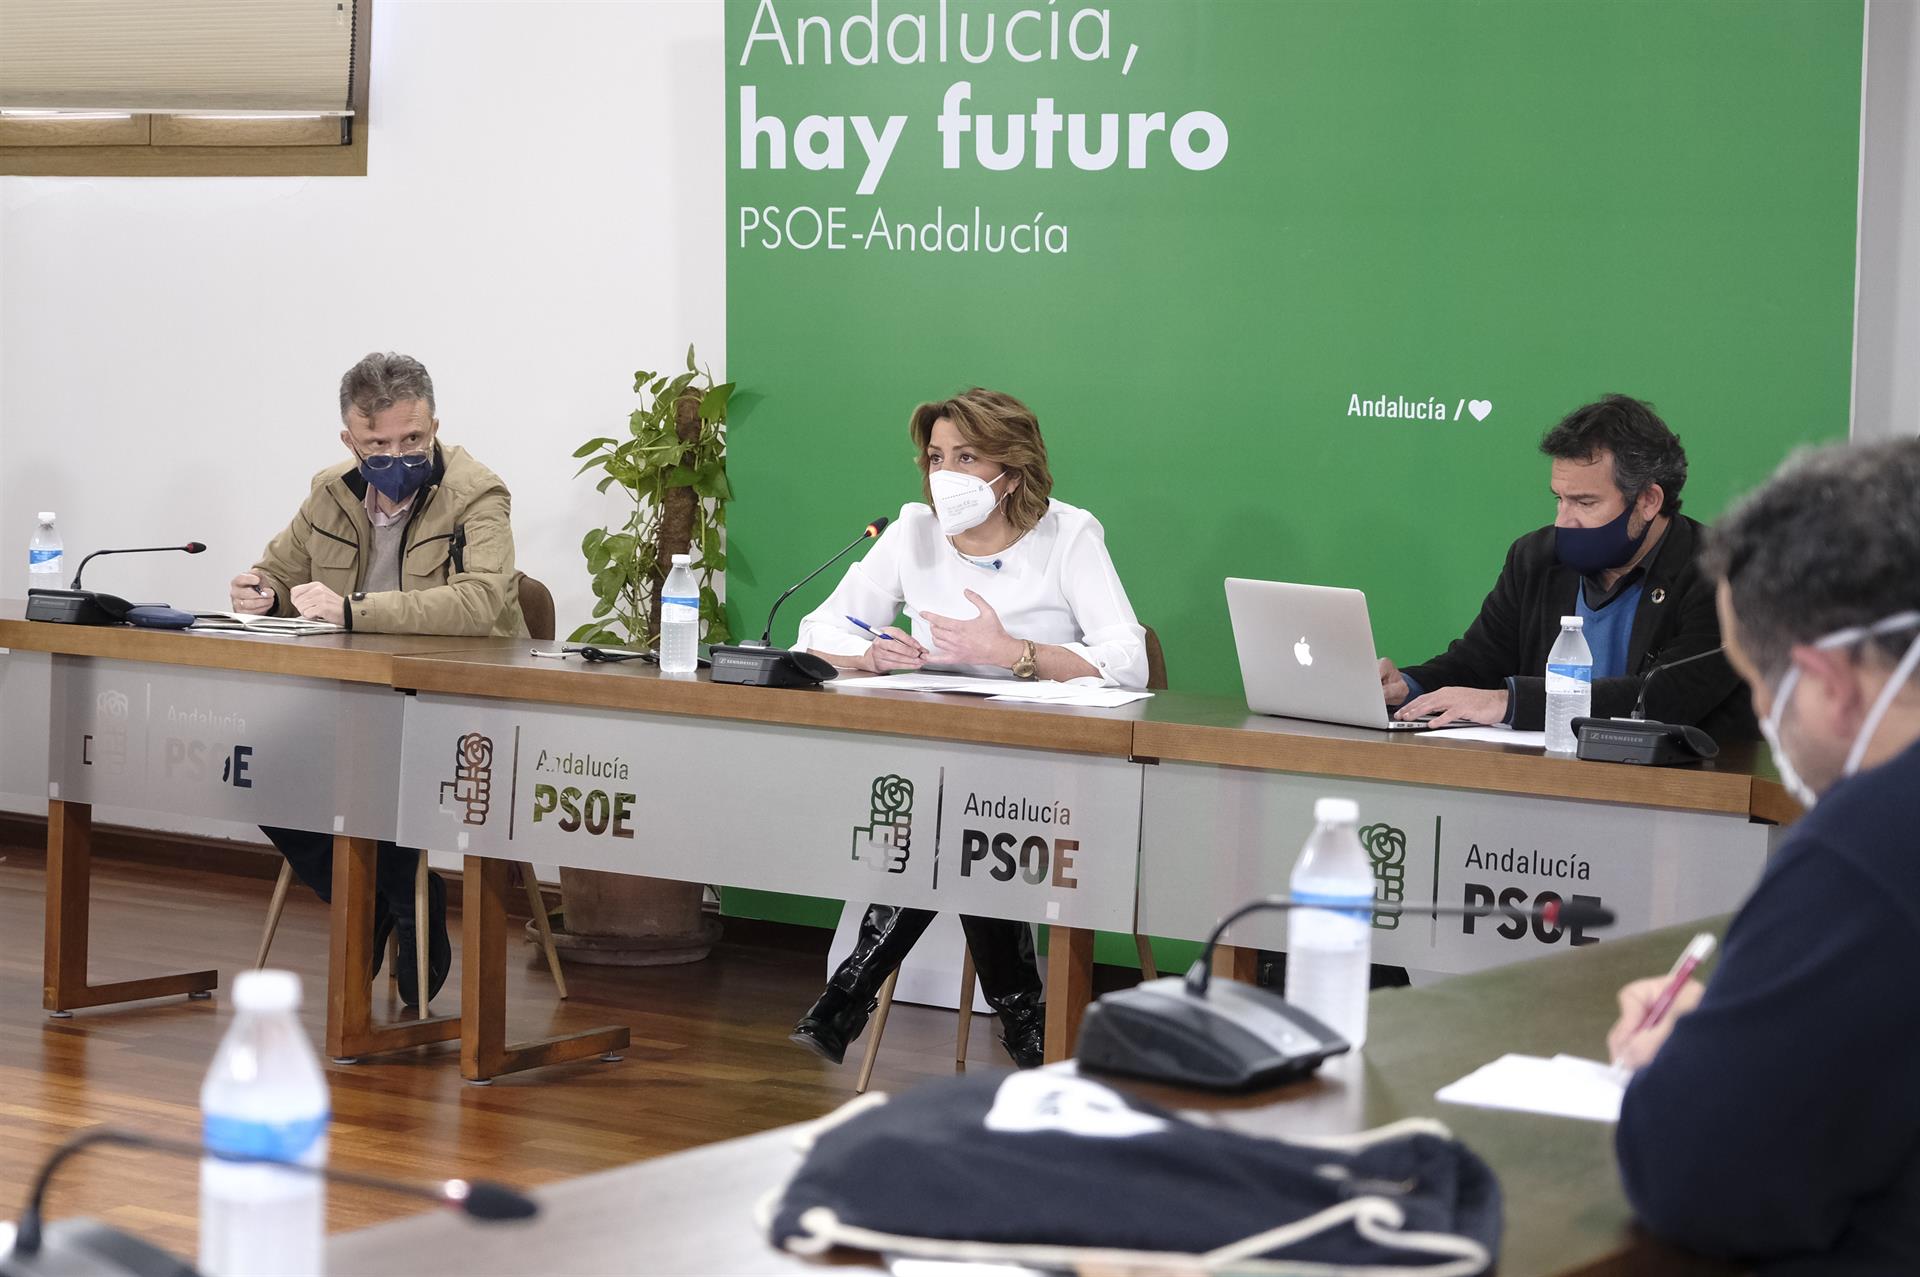 PSOE-A ganaría las autonómicas con 38-40 escaños, pero PP-A, Vox y Cs volverían a sumar mayoría absoluta según un sondeo